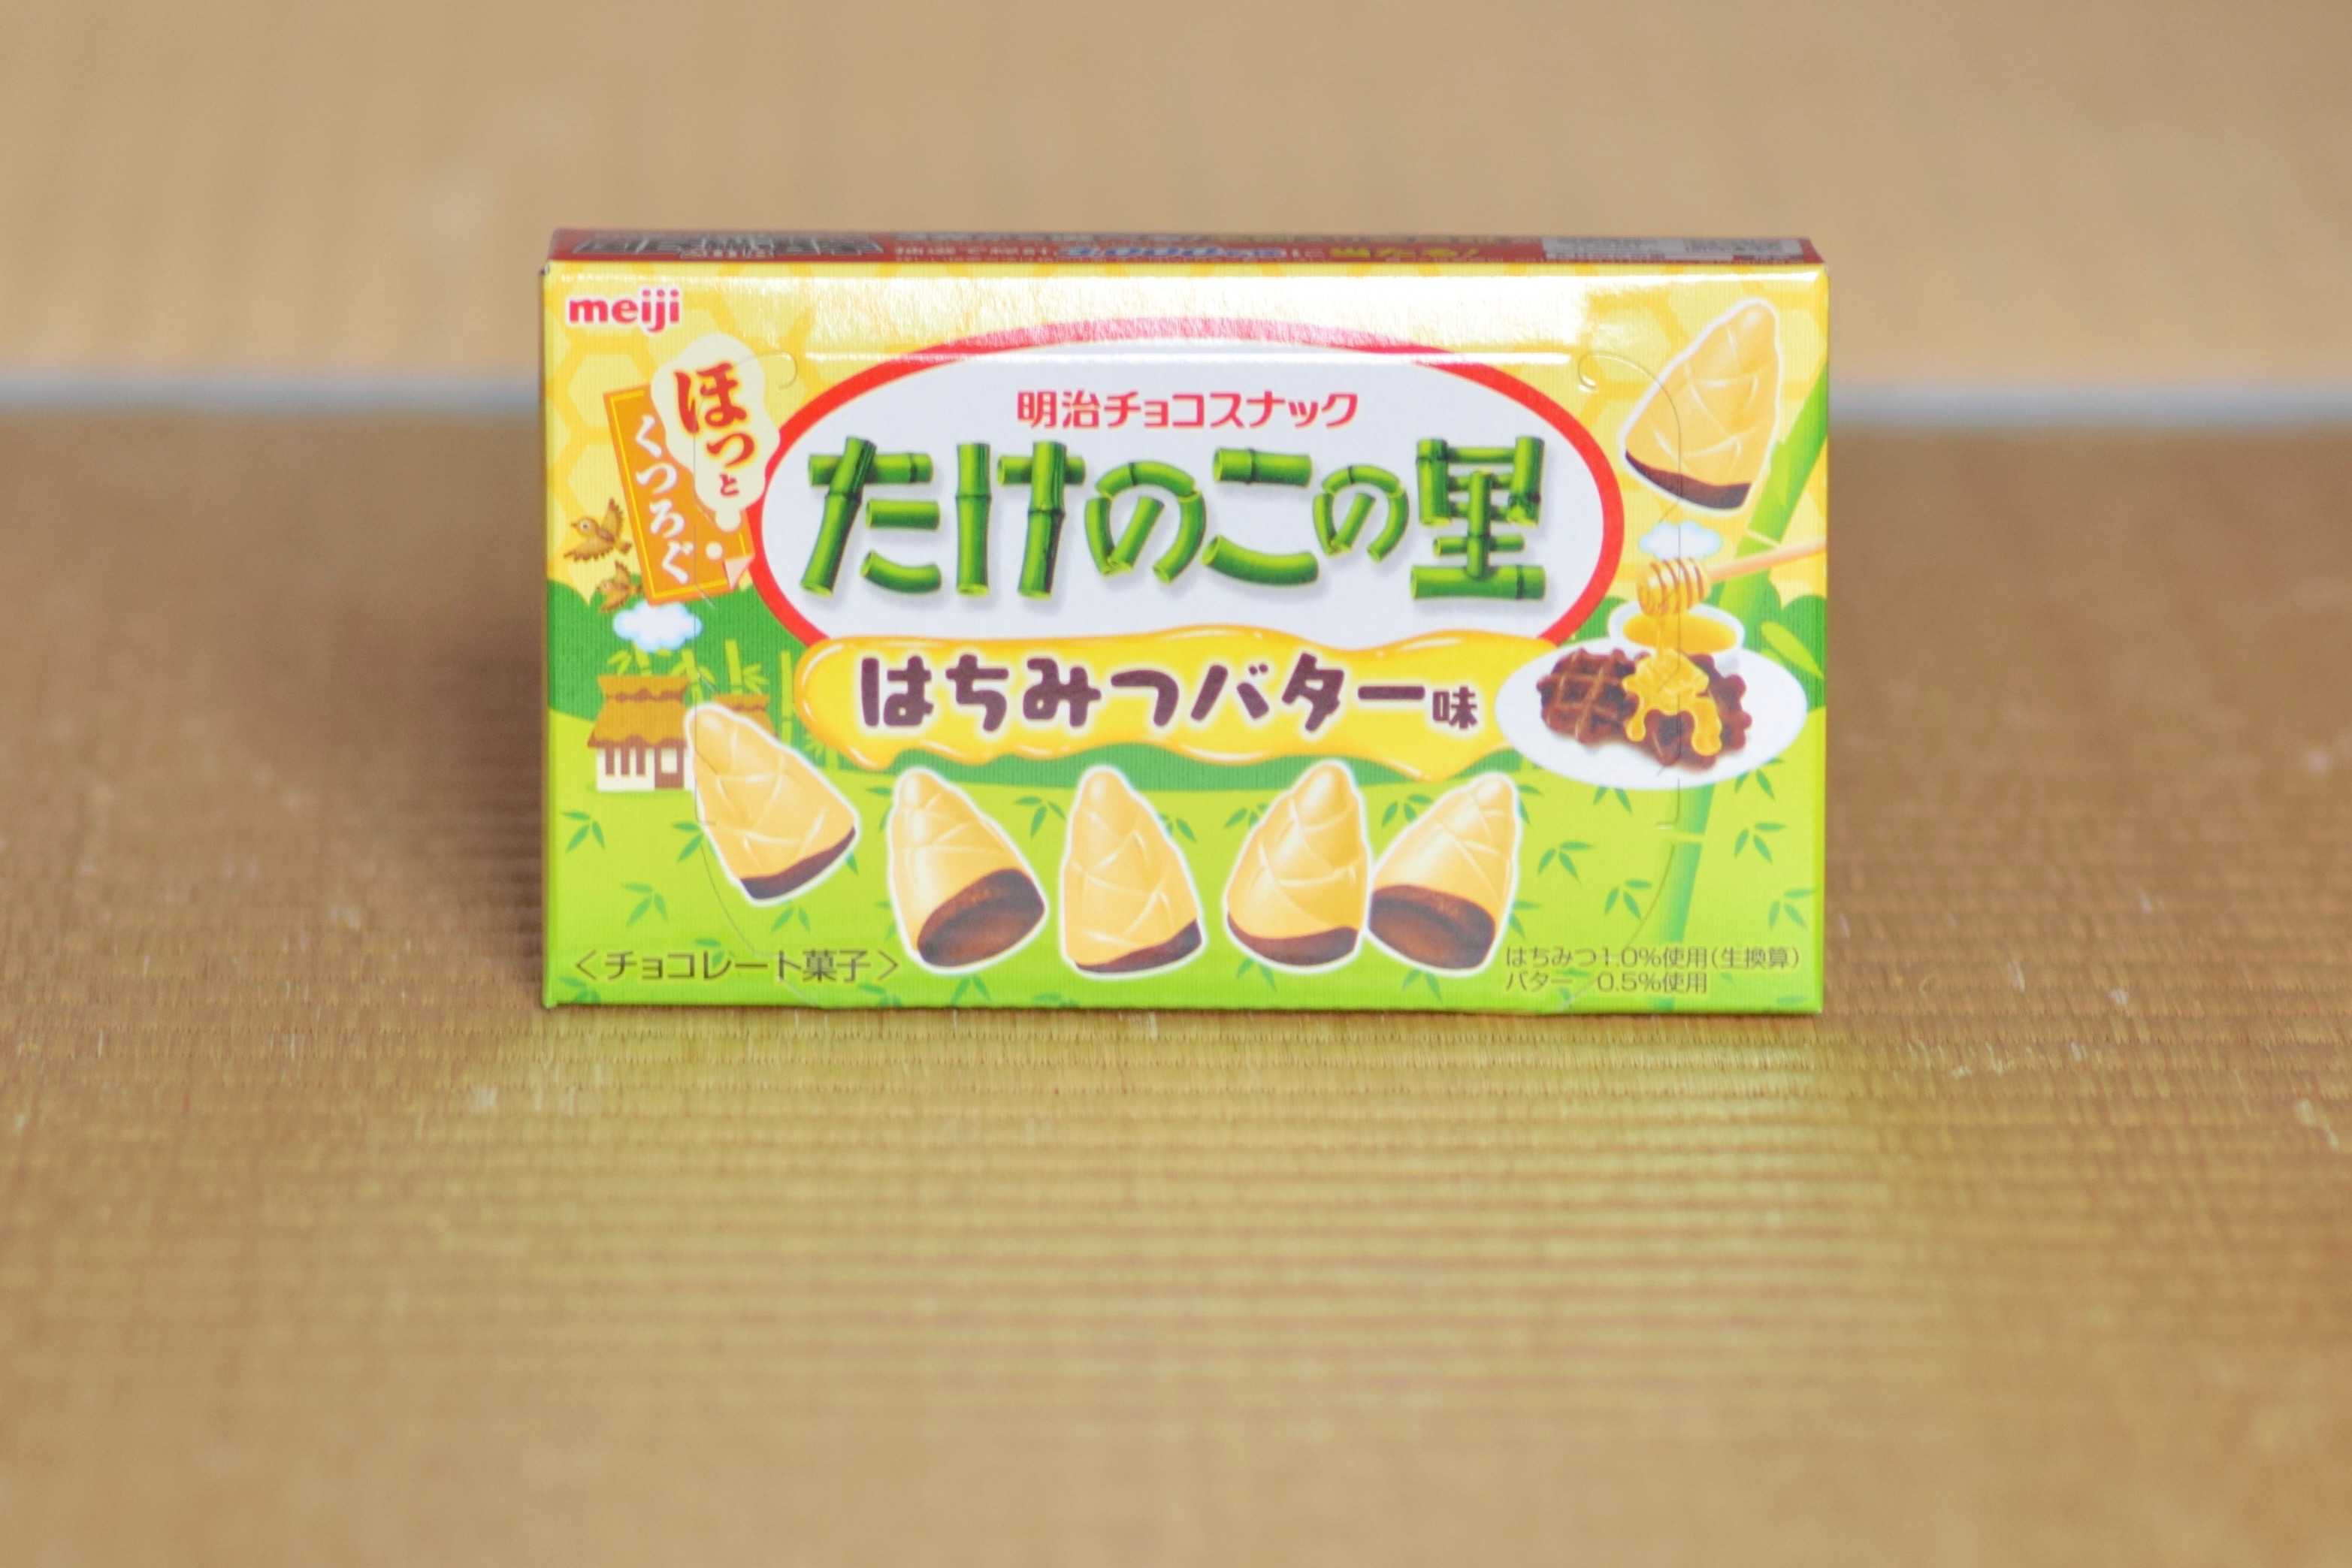 Takenoko no Sato candy